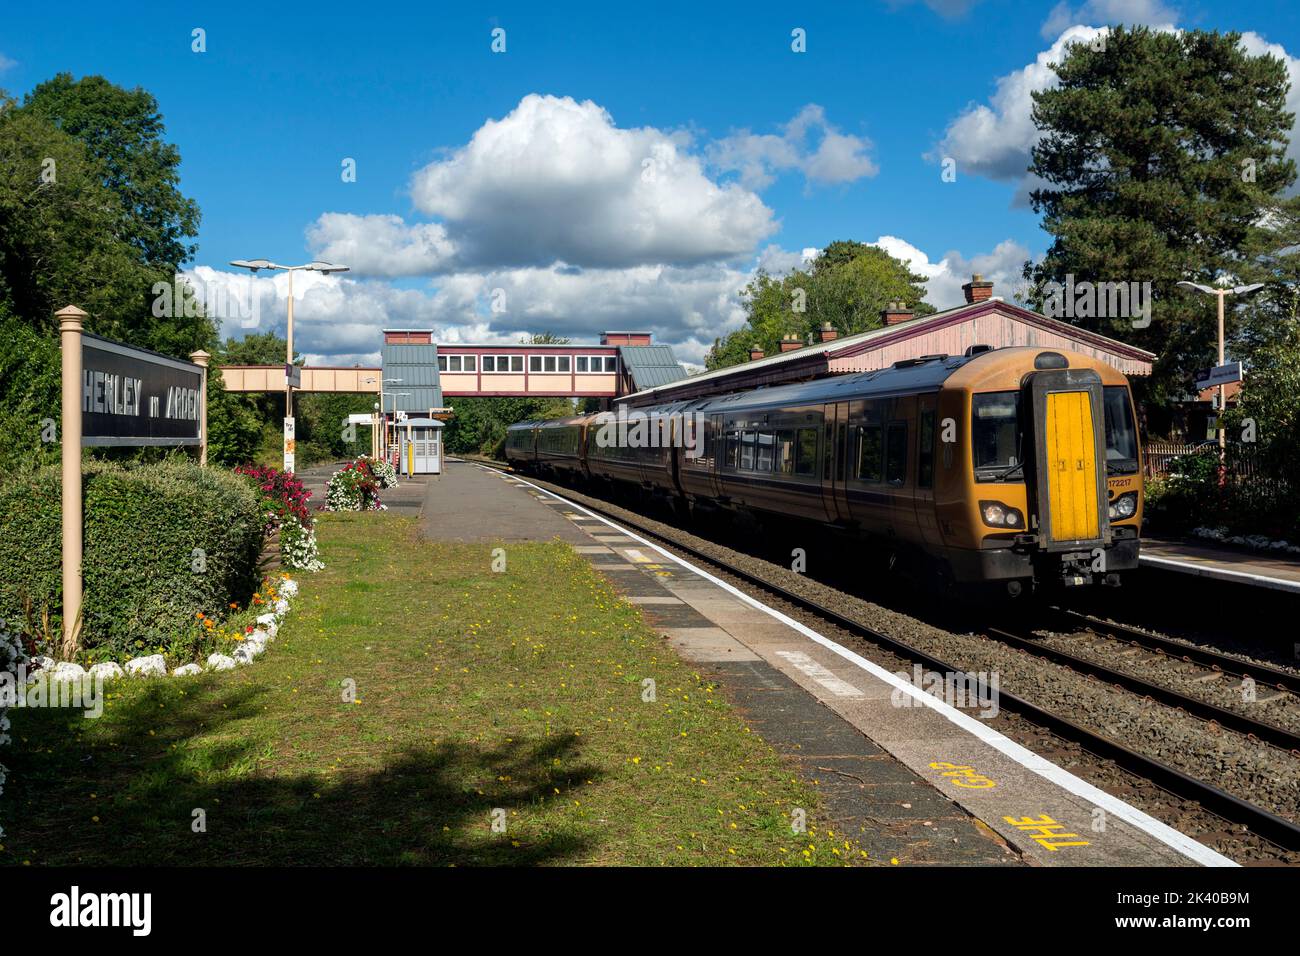 West Midlands Railway train at Henley-in-Arden station, Warwickshire, England, UK Stock Photo